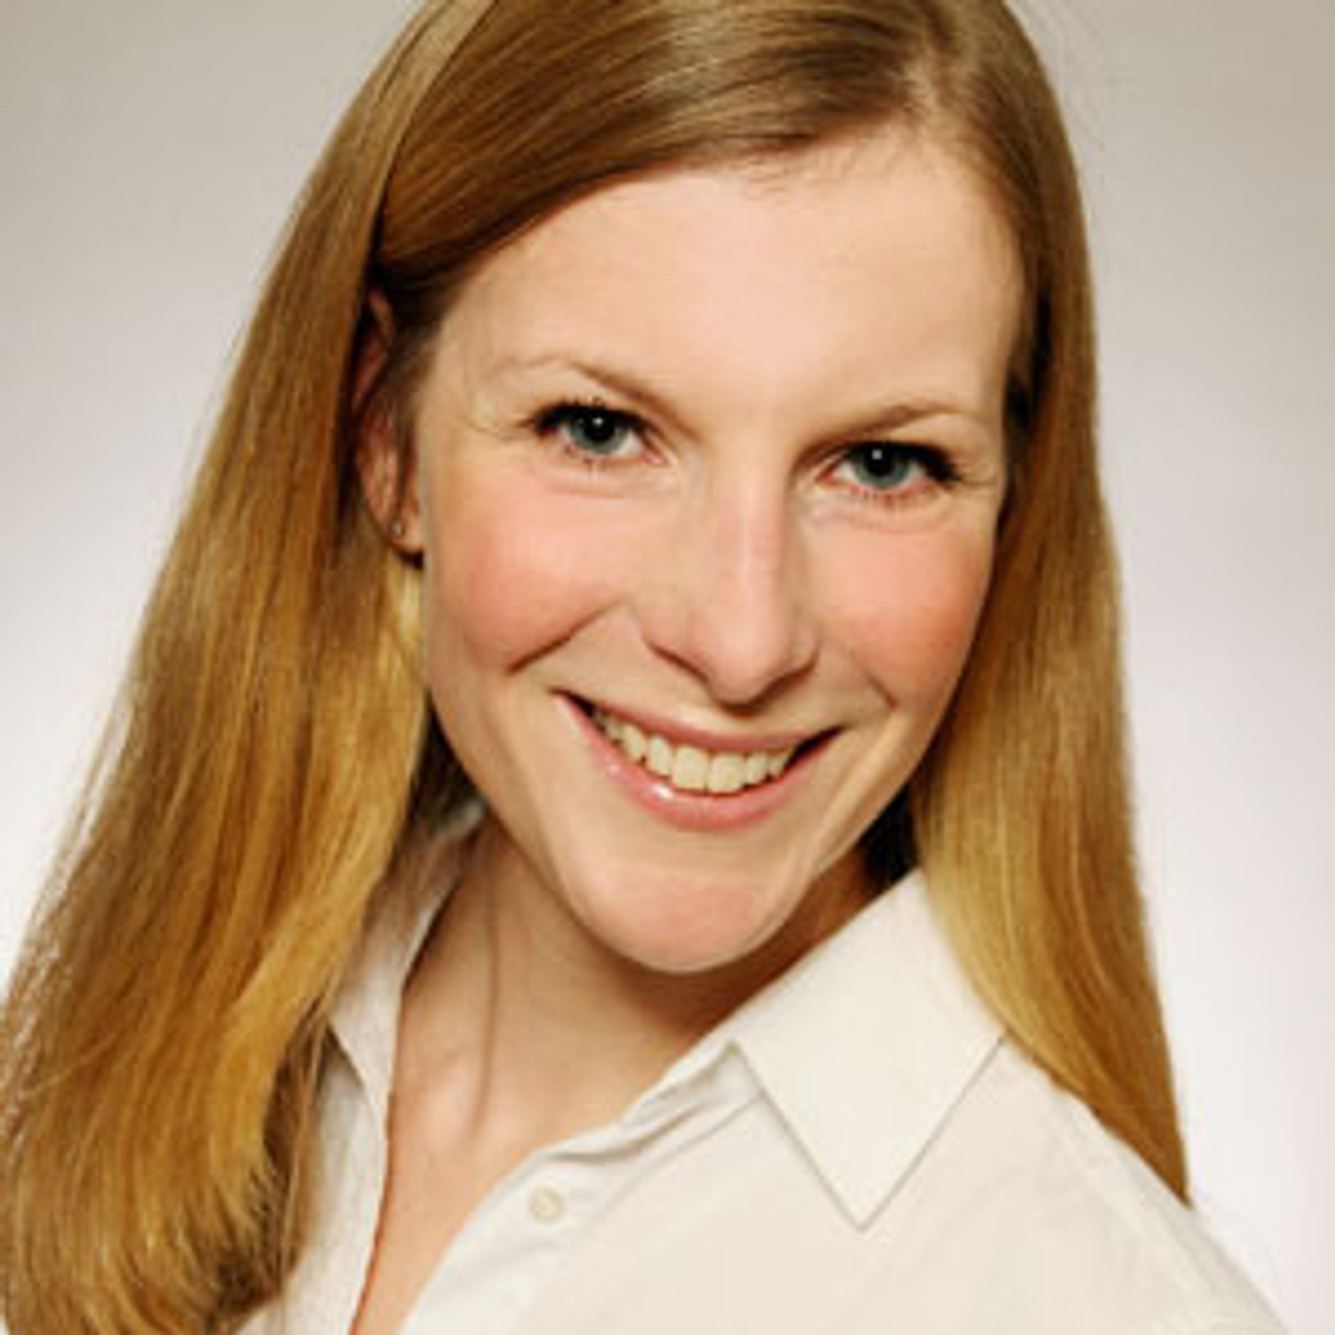 Kinderärztin Dr. Nadine Hess klärt über Schilddrüsenunterfunktion auf